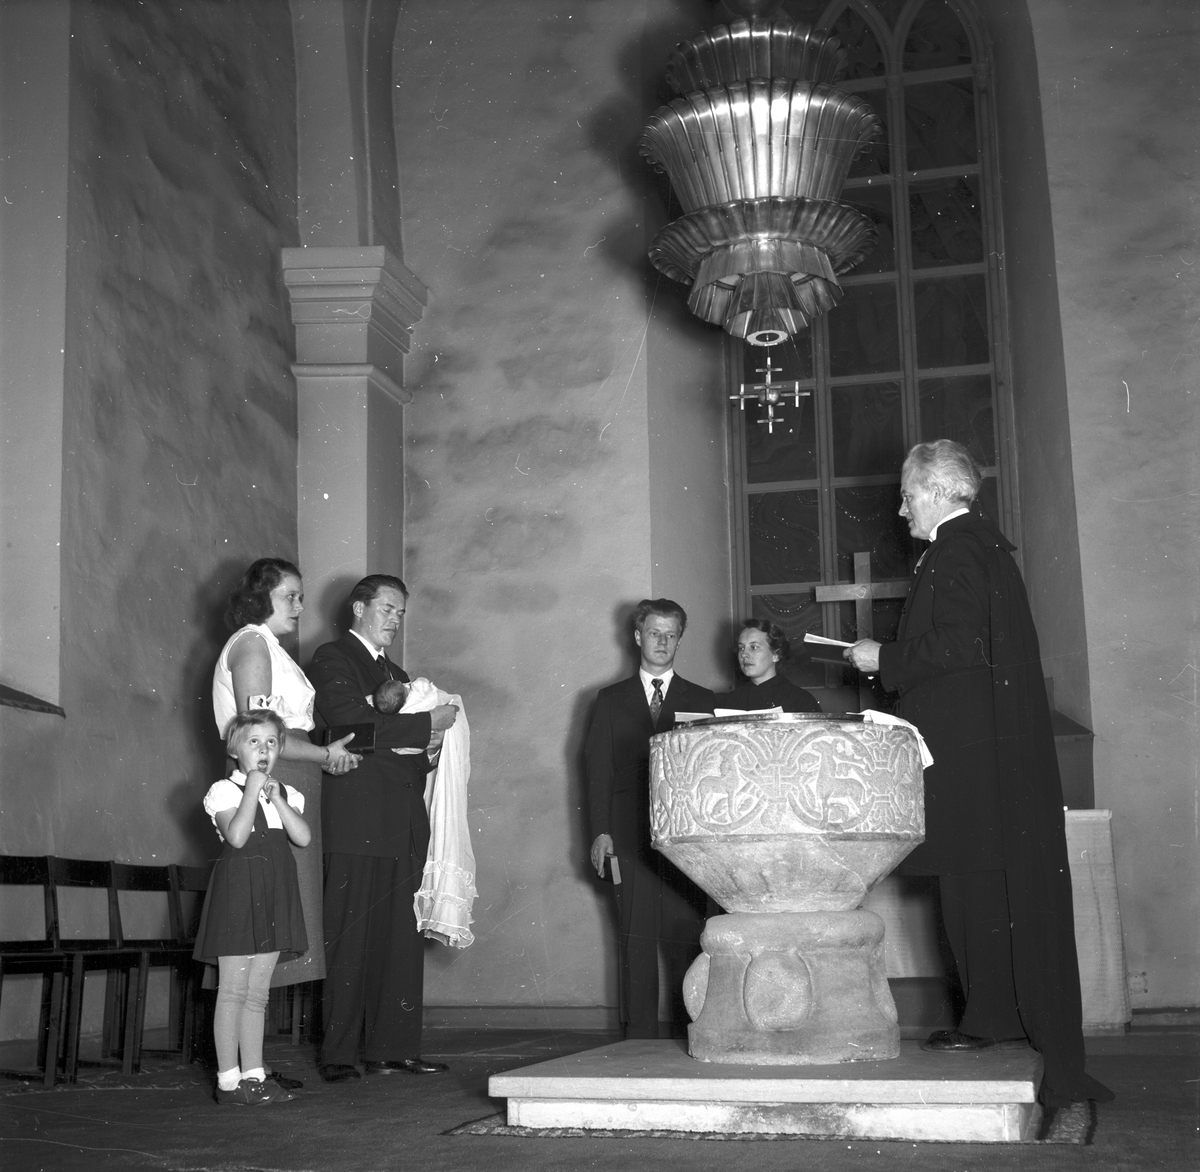 Barndop i Storkyrkan. 1 januari 1955.
Rosbäck, Södra Stapeltorgsgatan 22 B, Gävle